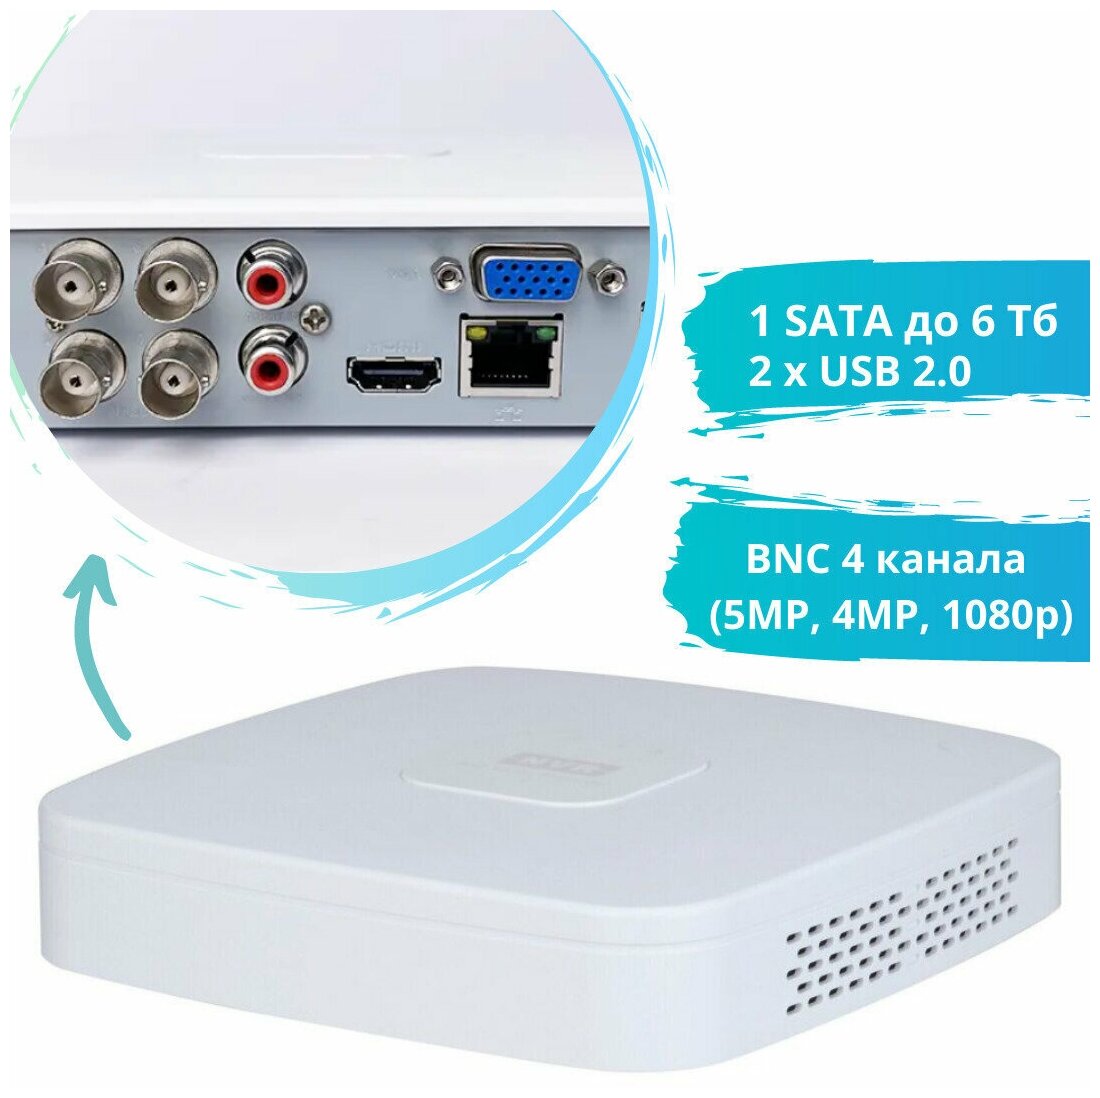 Видеорегистратор DAHUA DH-XVR5104C-I3 4-канальный, HDMI, VGA, 2хUSB2.0, RJ-45, 1 отсек/HDD, мультиформатный